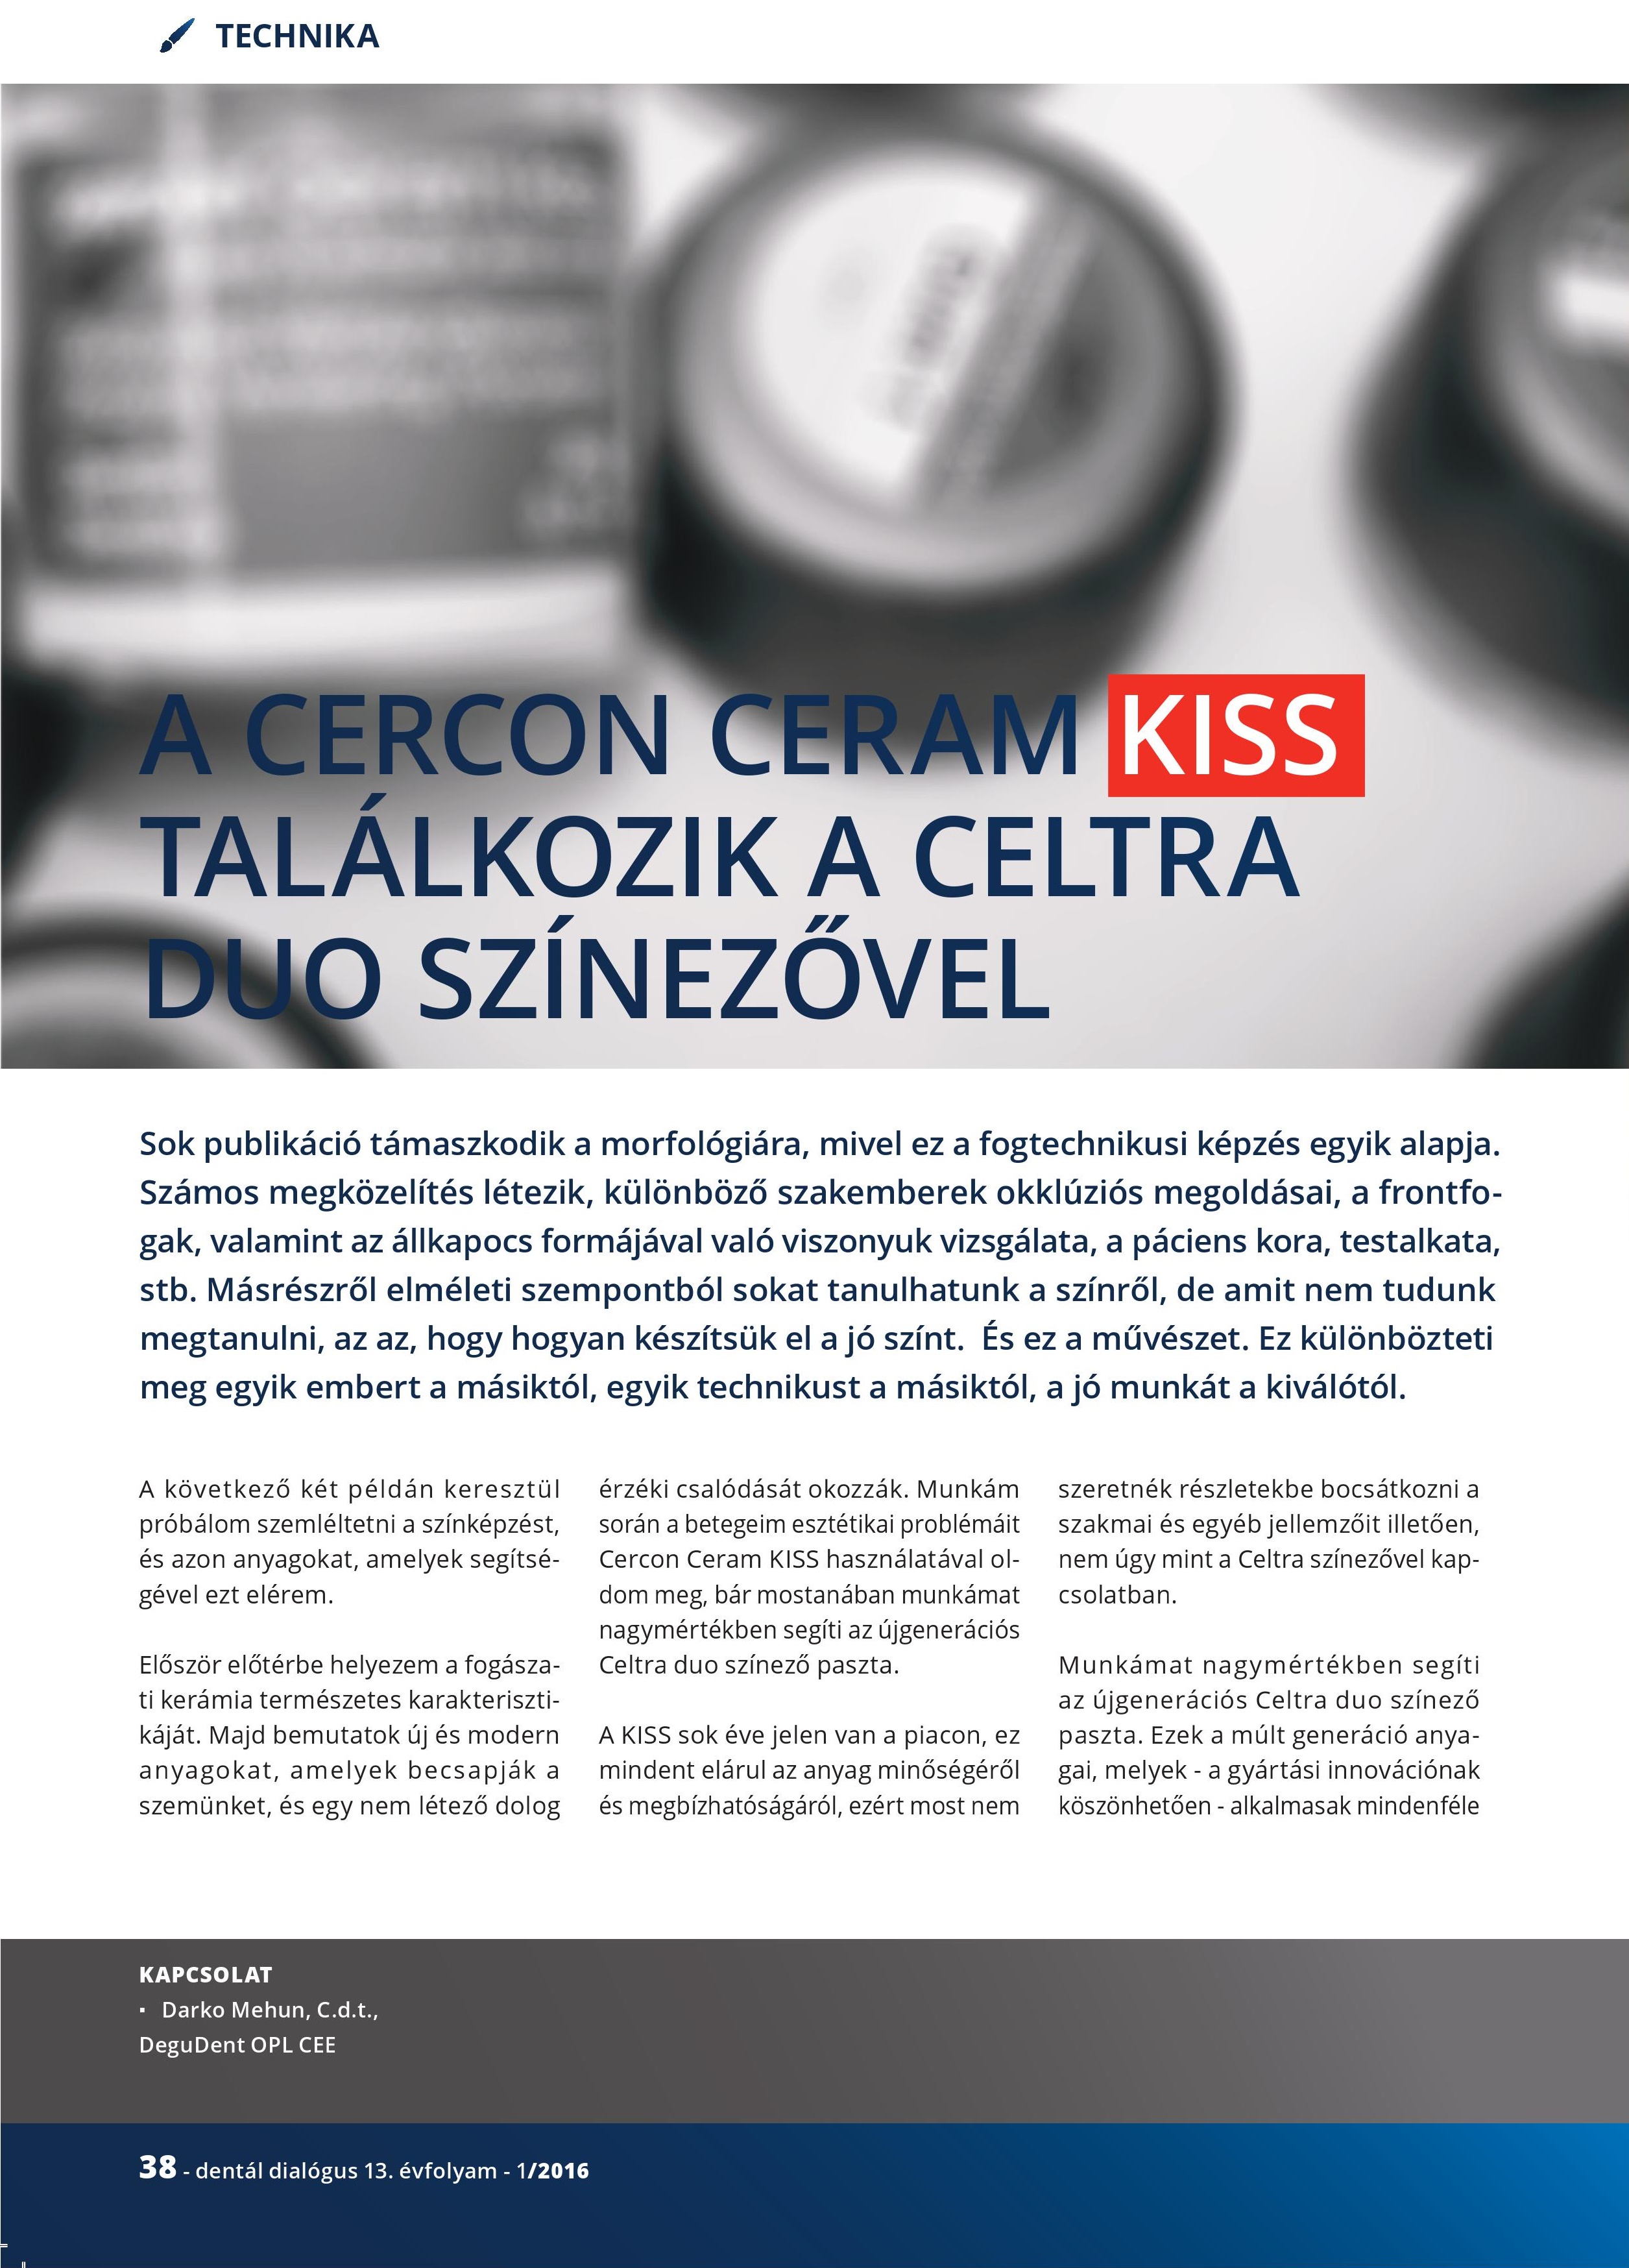 Cercon Ceram Kiss találkozik Celtra Duo színezővel